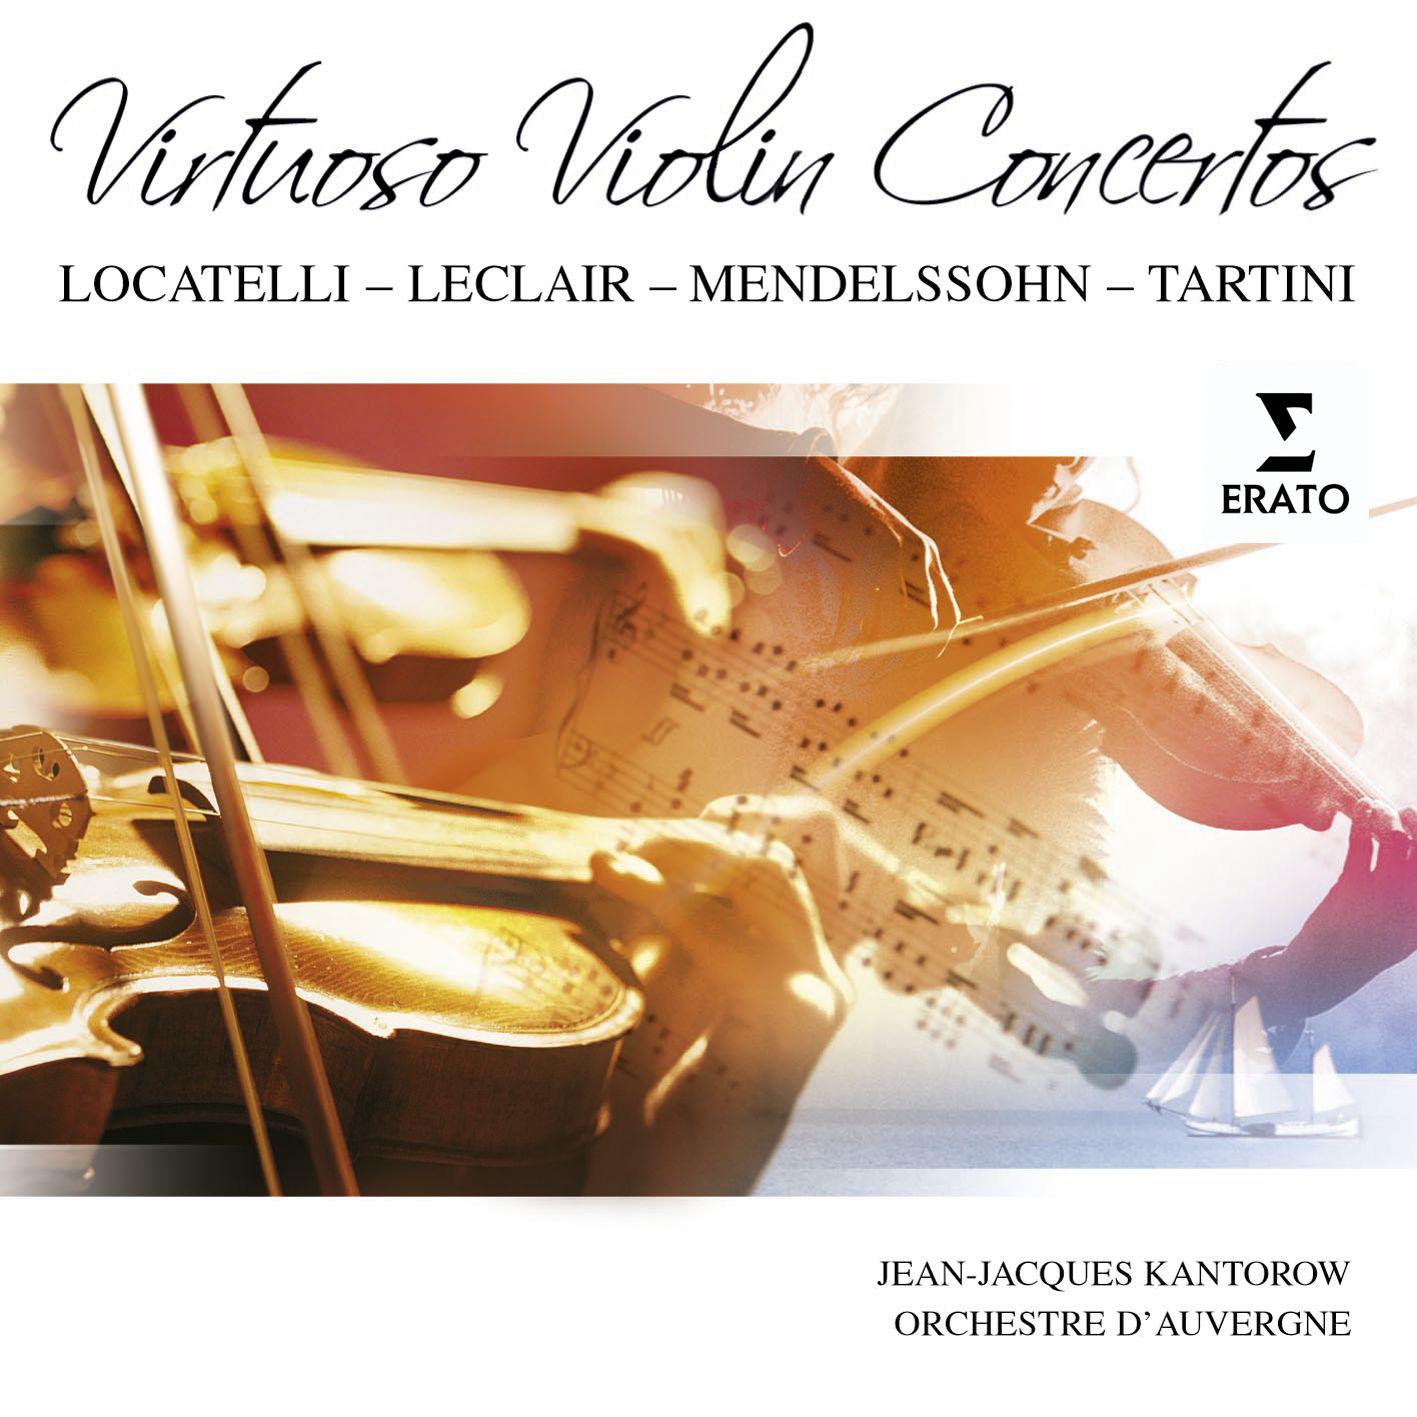 Violin concerto in D Major, Op. 3 No. 12: II Largo - Presto - Adagio